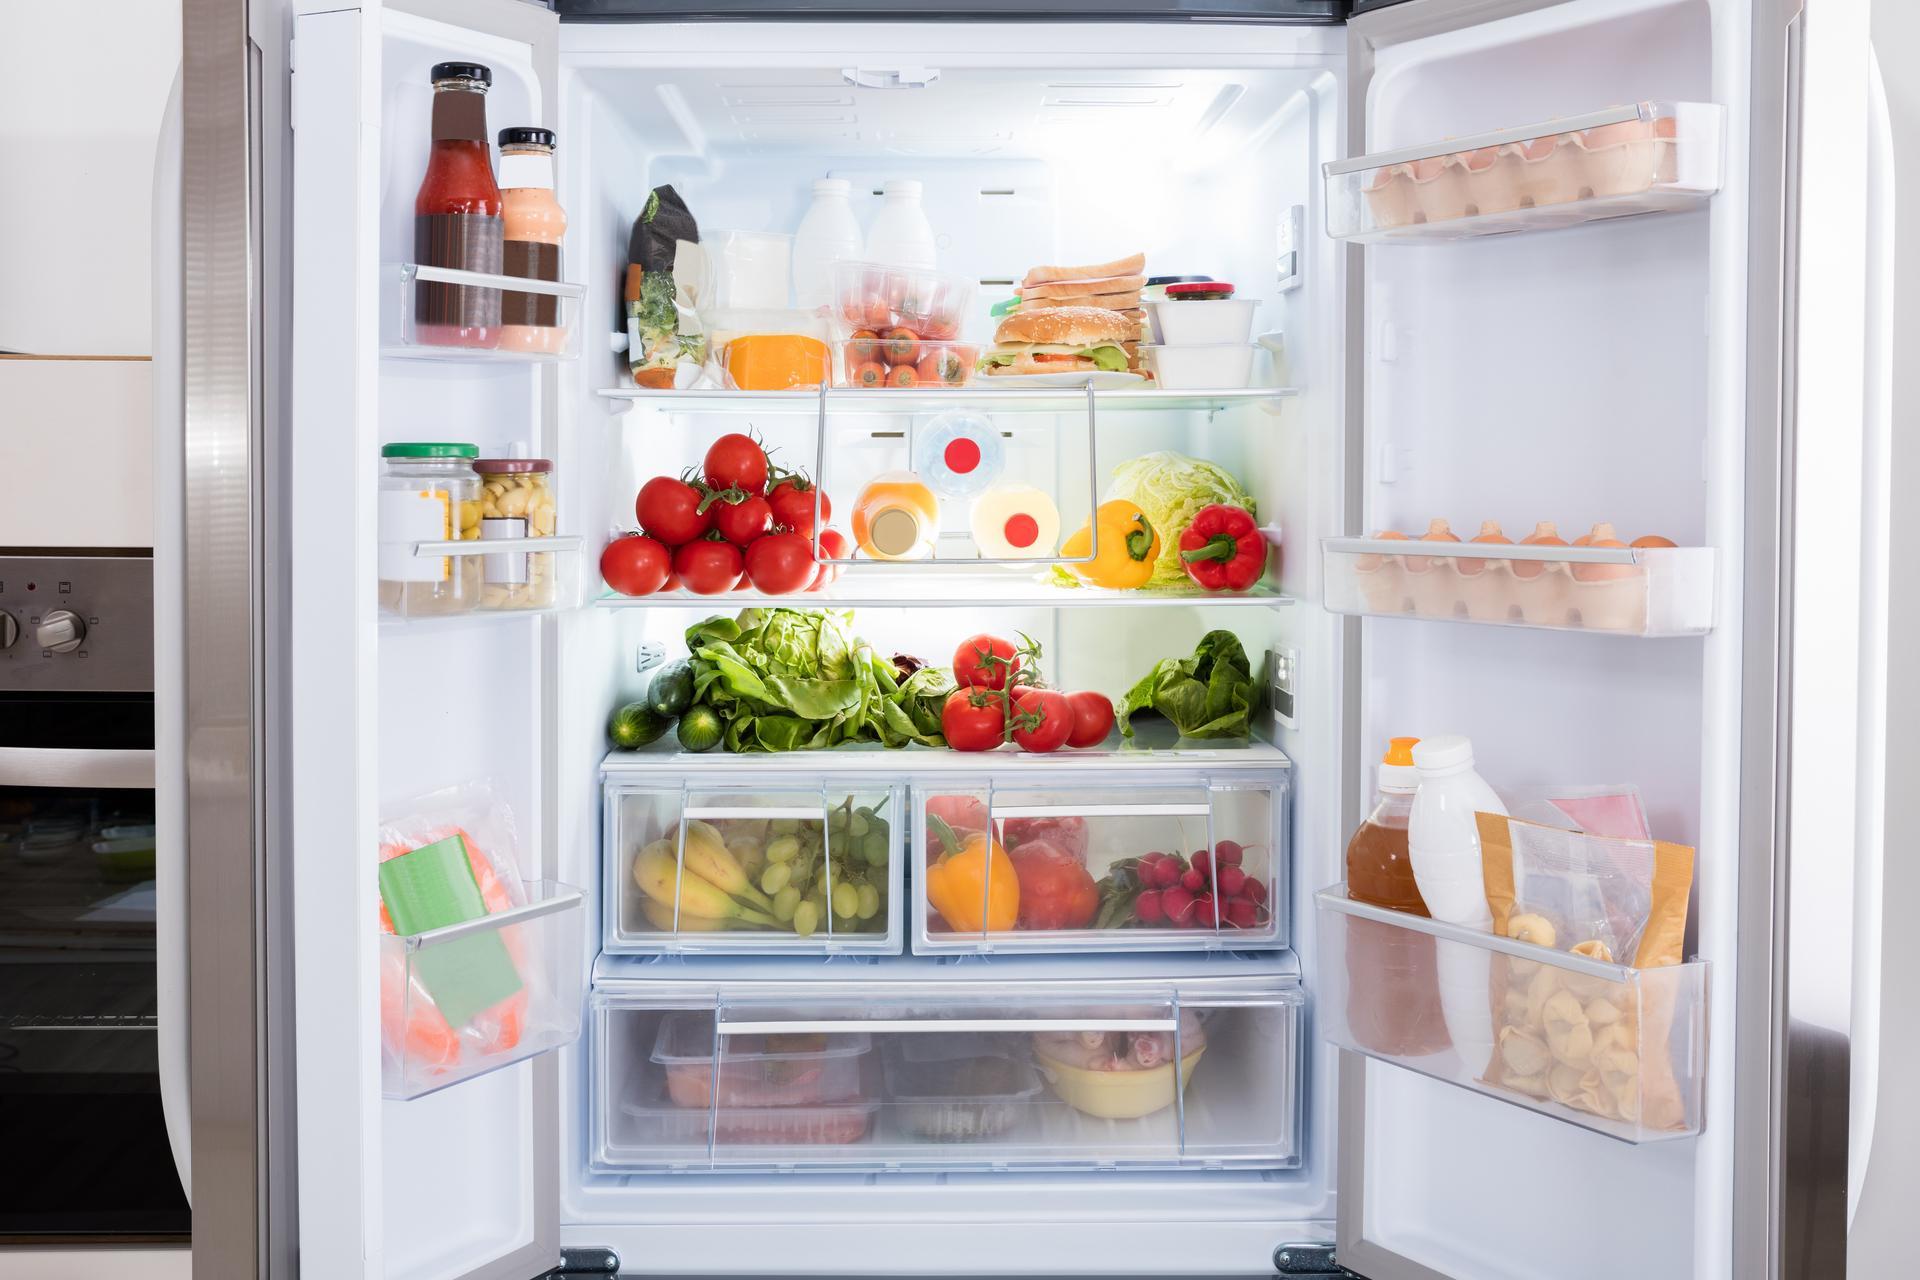 Offener Kühlschrank, gefüllt mit frischem Obst und Gemüse